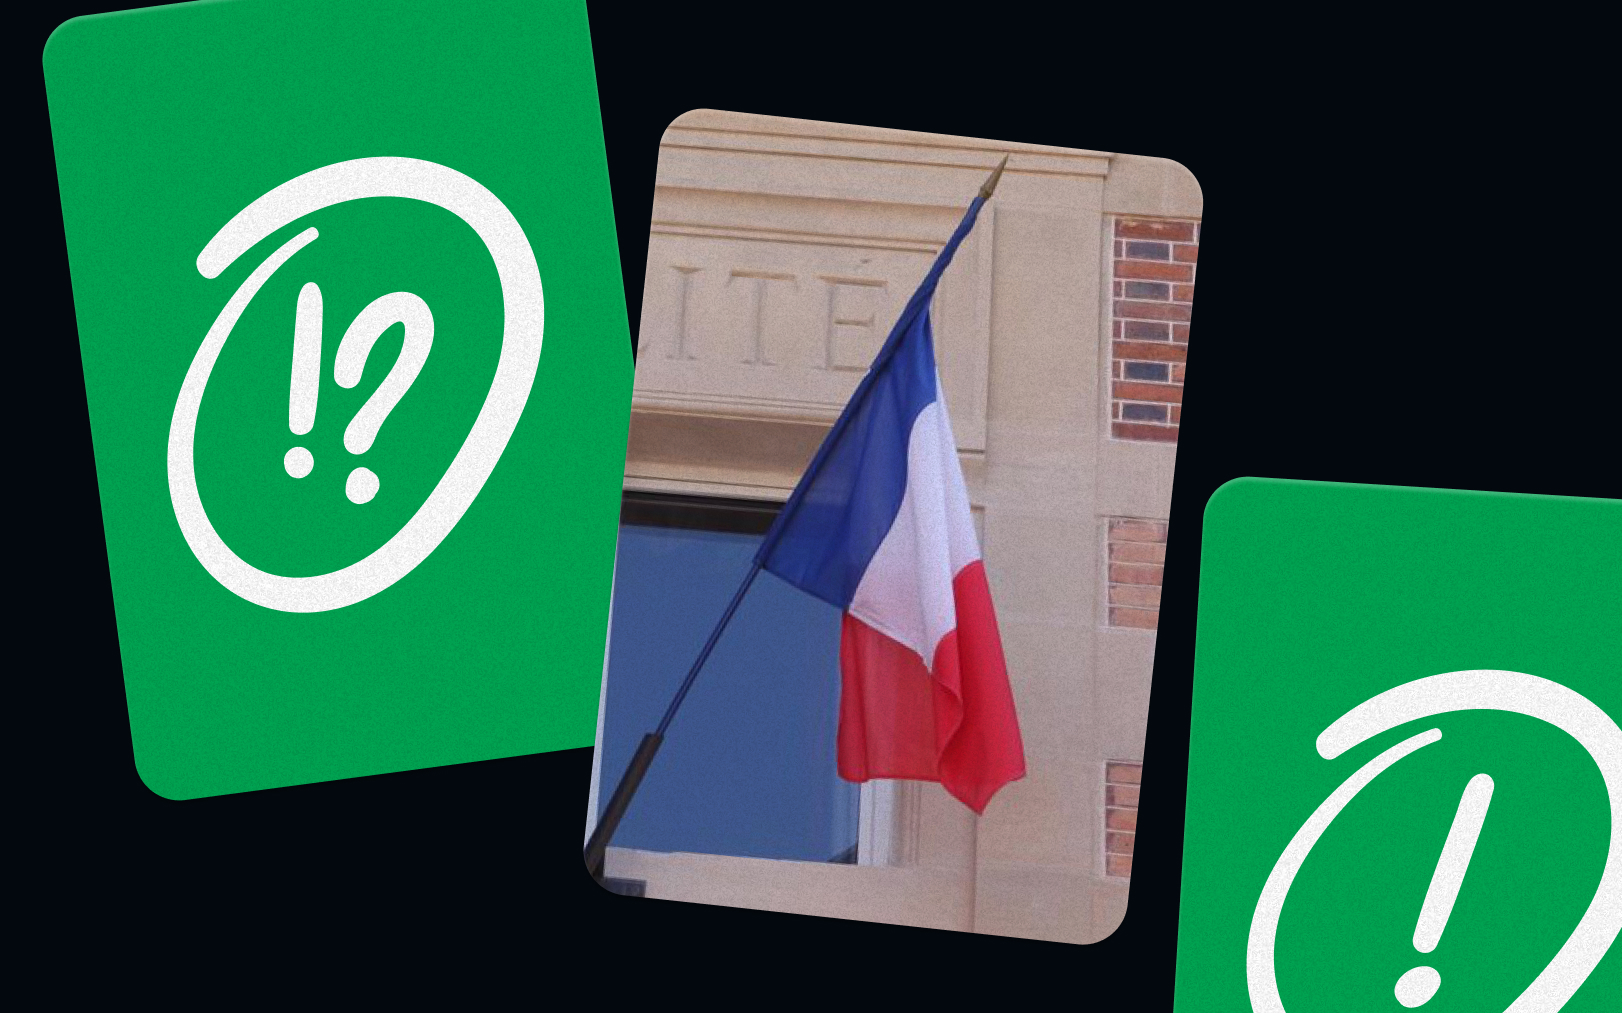 Les prétendants à la naturalisation française doivent passer un entretien dans lequel leur connaissance des institutions françaises est vérifiée.